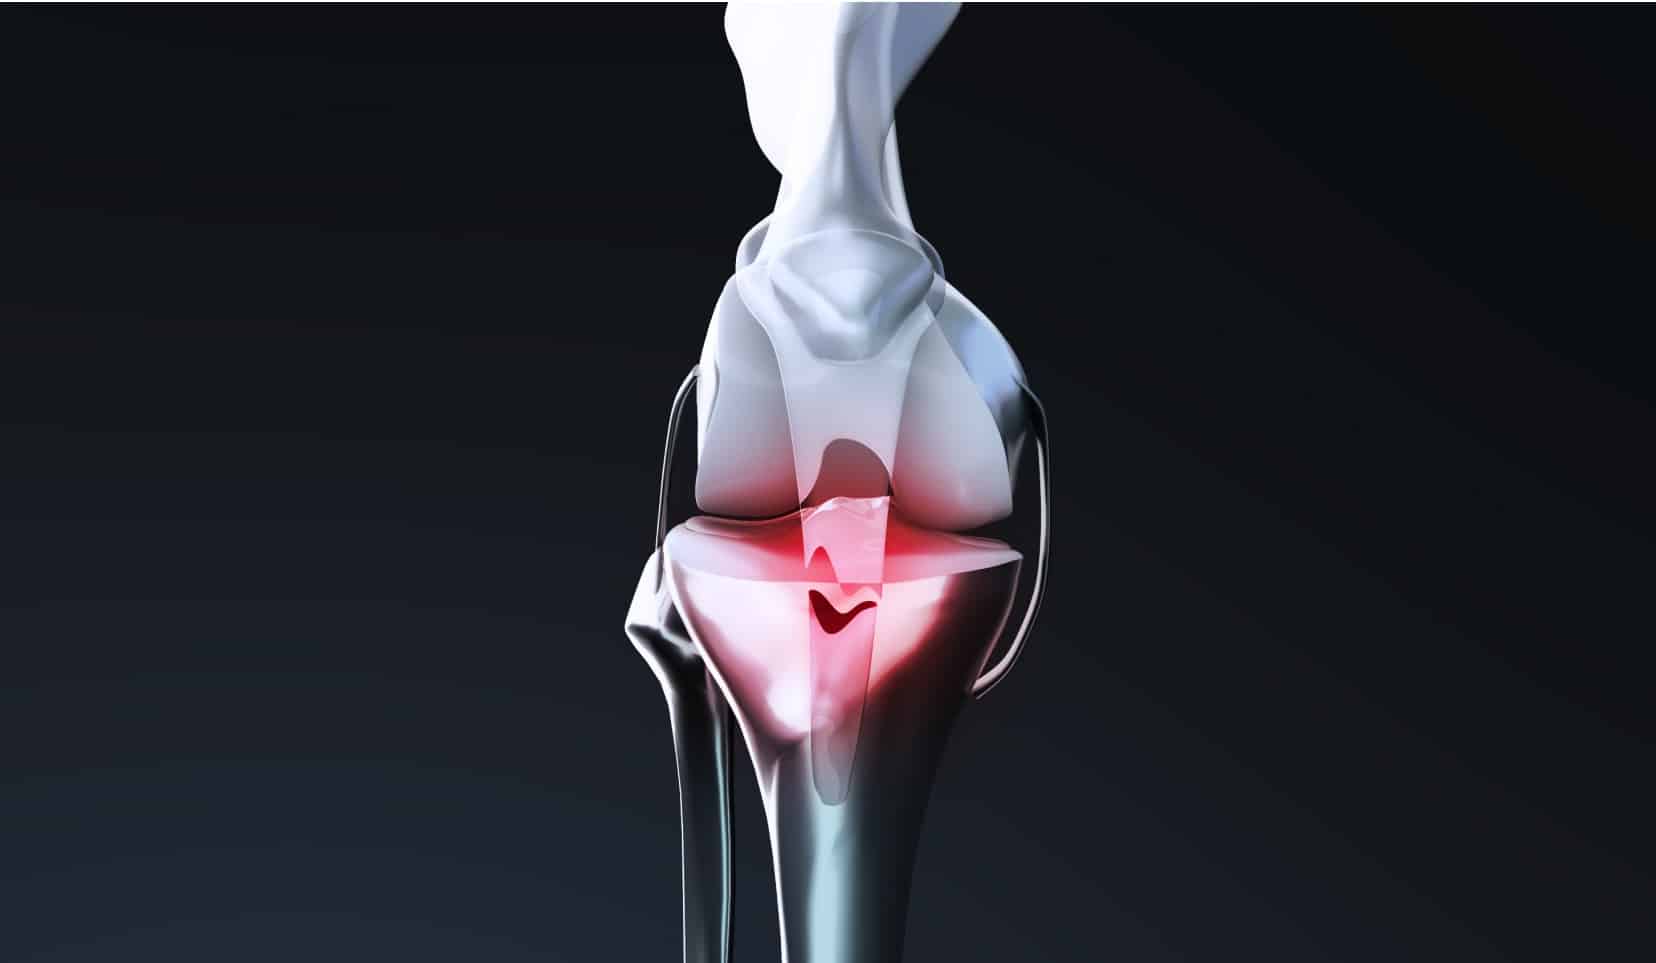 Rupture du tendon rotulien : traitement | Rupture tendon rotulien temps de guérison | Dr Polle | Bois-Guillaume